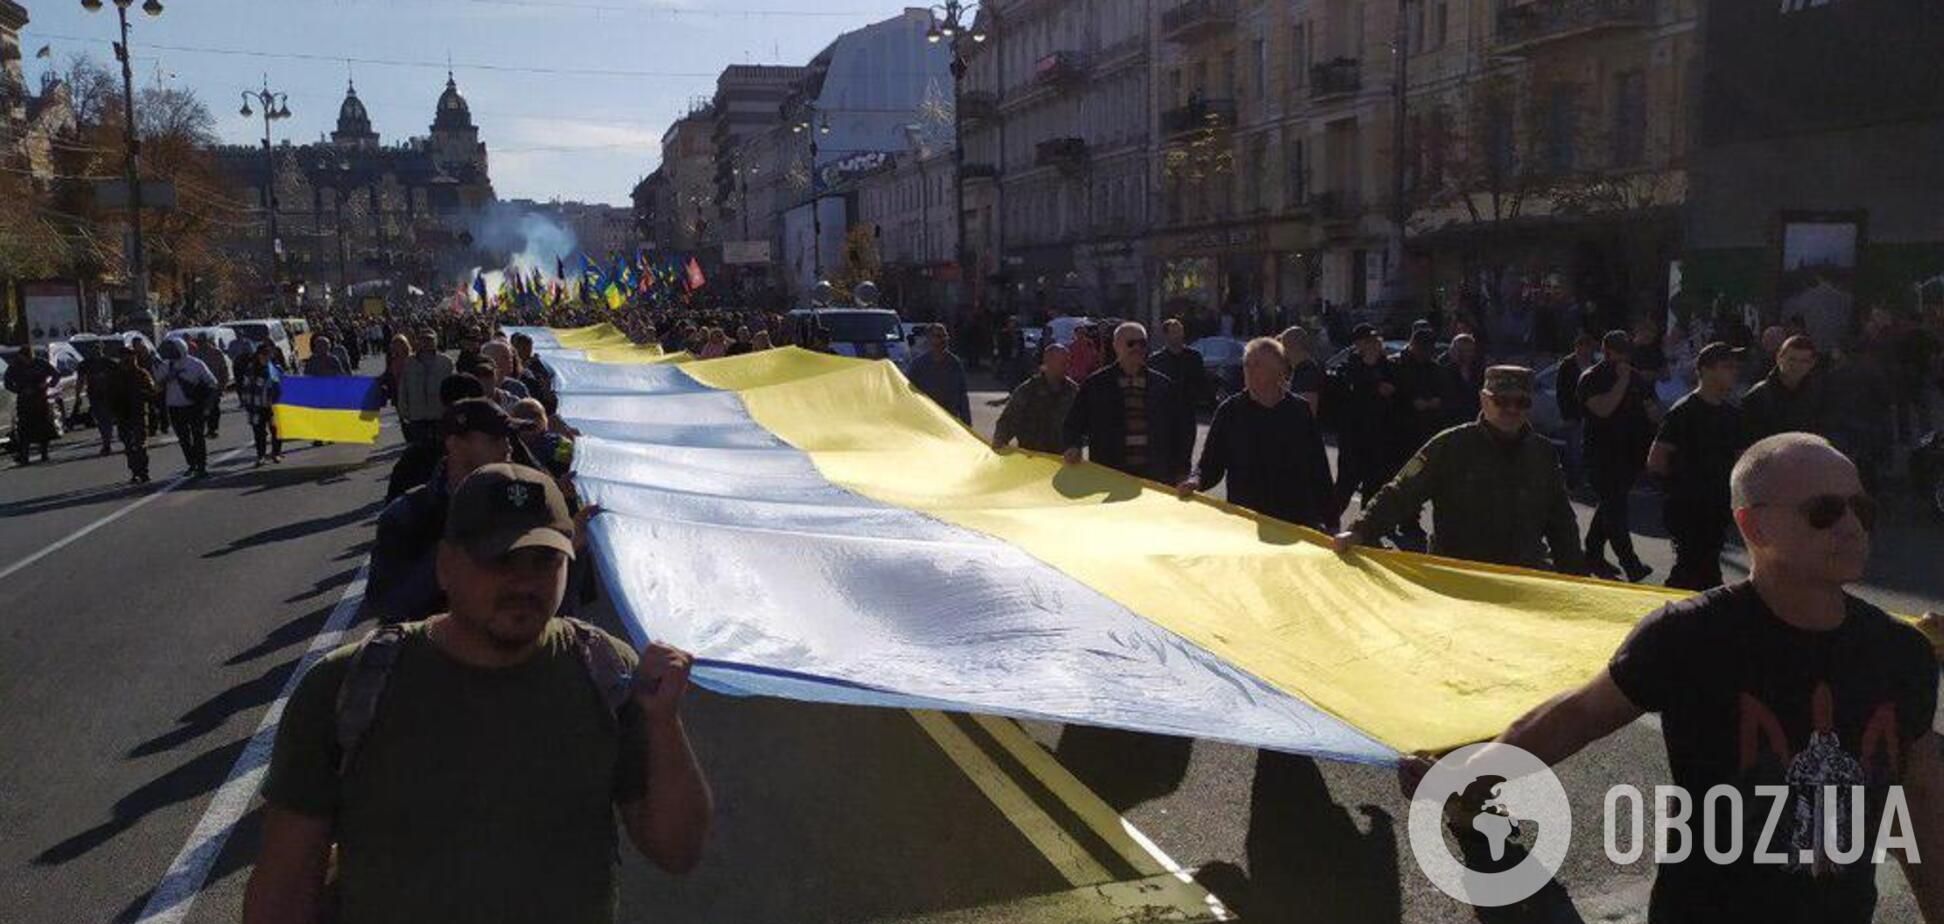 Появились эксклюзивные фото и видео с Марша защитников в Киеве